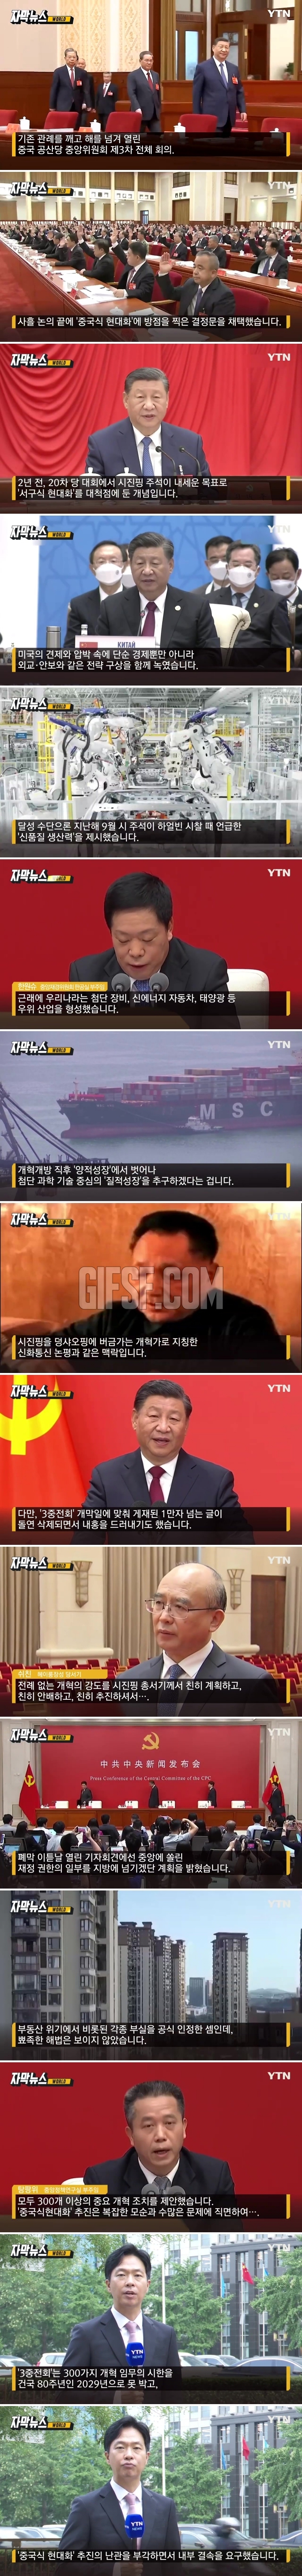 中 정부 영끌에도 ',속수무책',.수렁 빠진 시진핑의 승부수.jpg